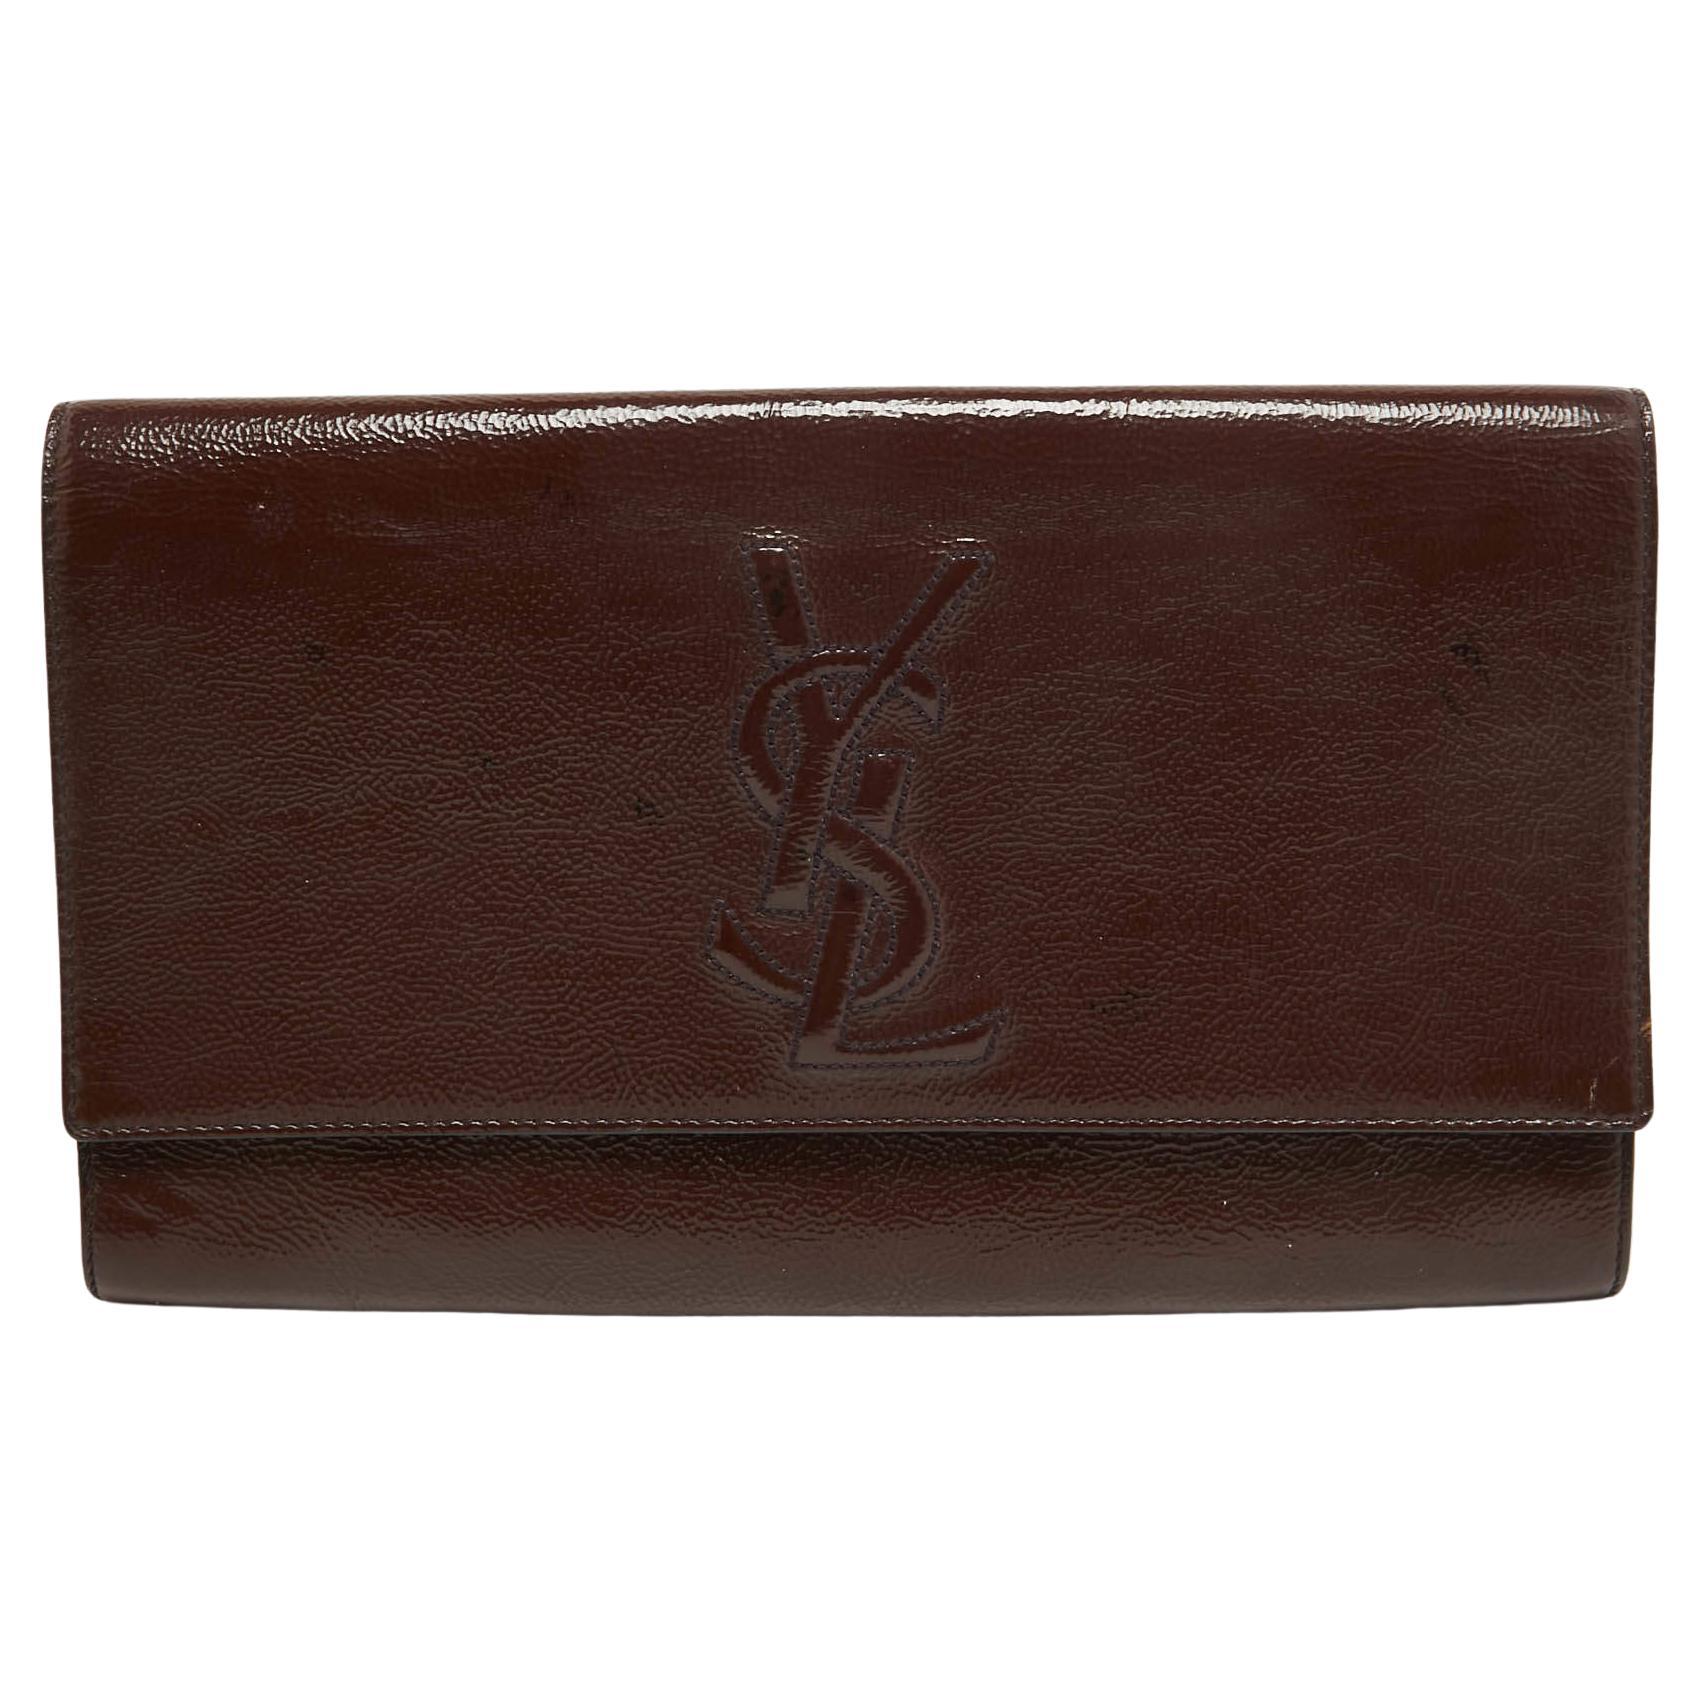 Yves Saint Laurent Dark Brown Patent Leather Belle De Jour Flap Clutch For Sale